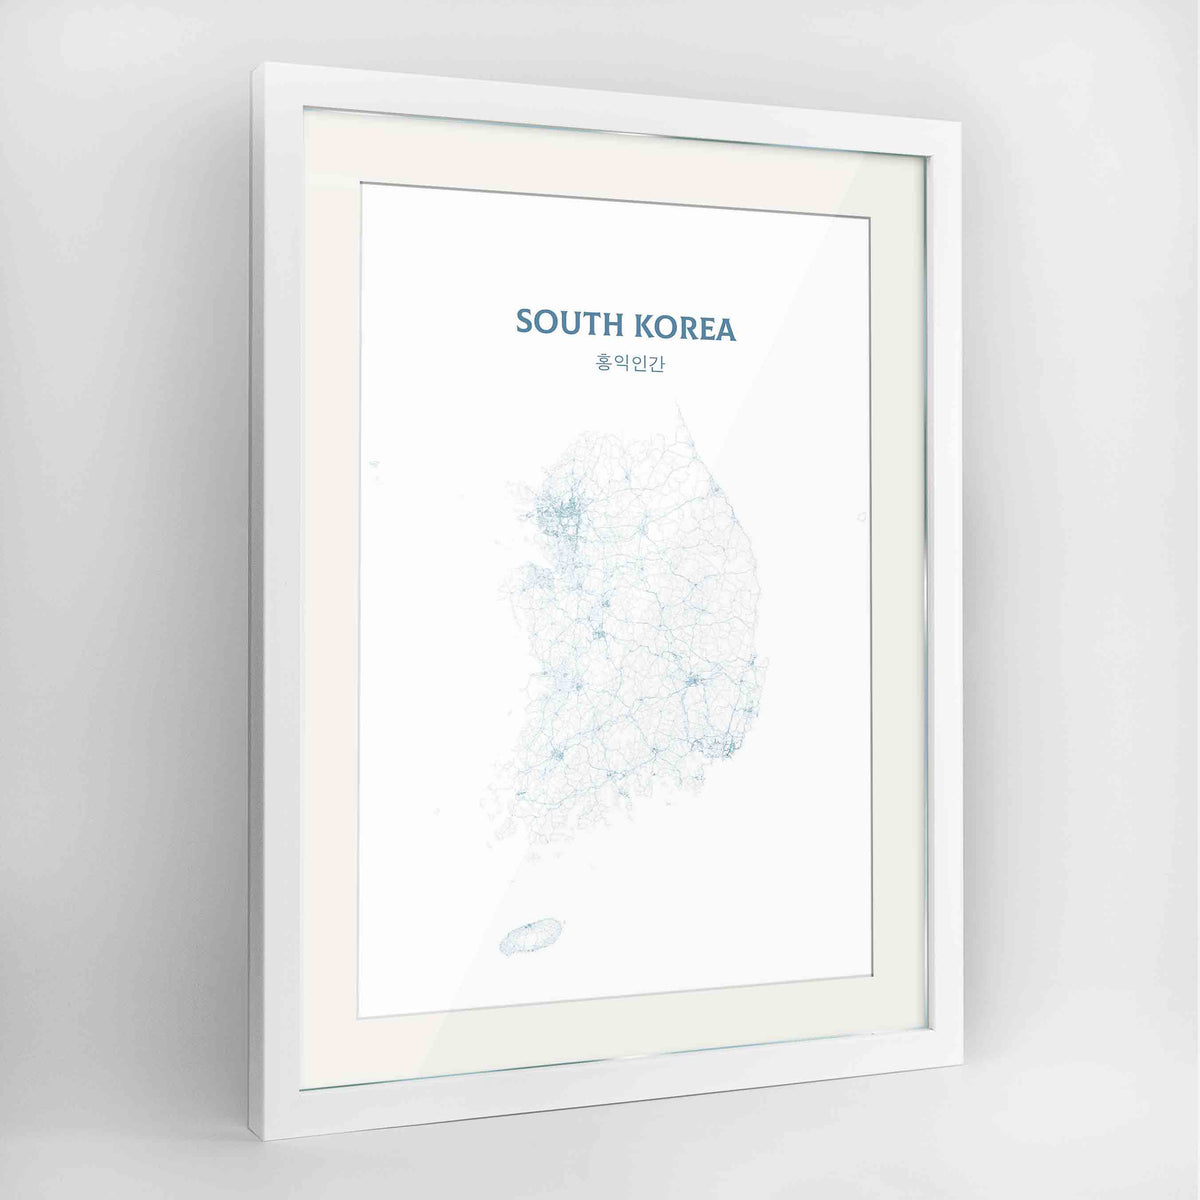 South Korea - All Roads Art Print - Framed